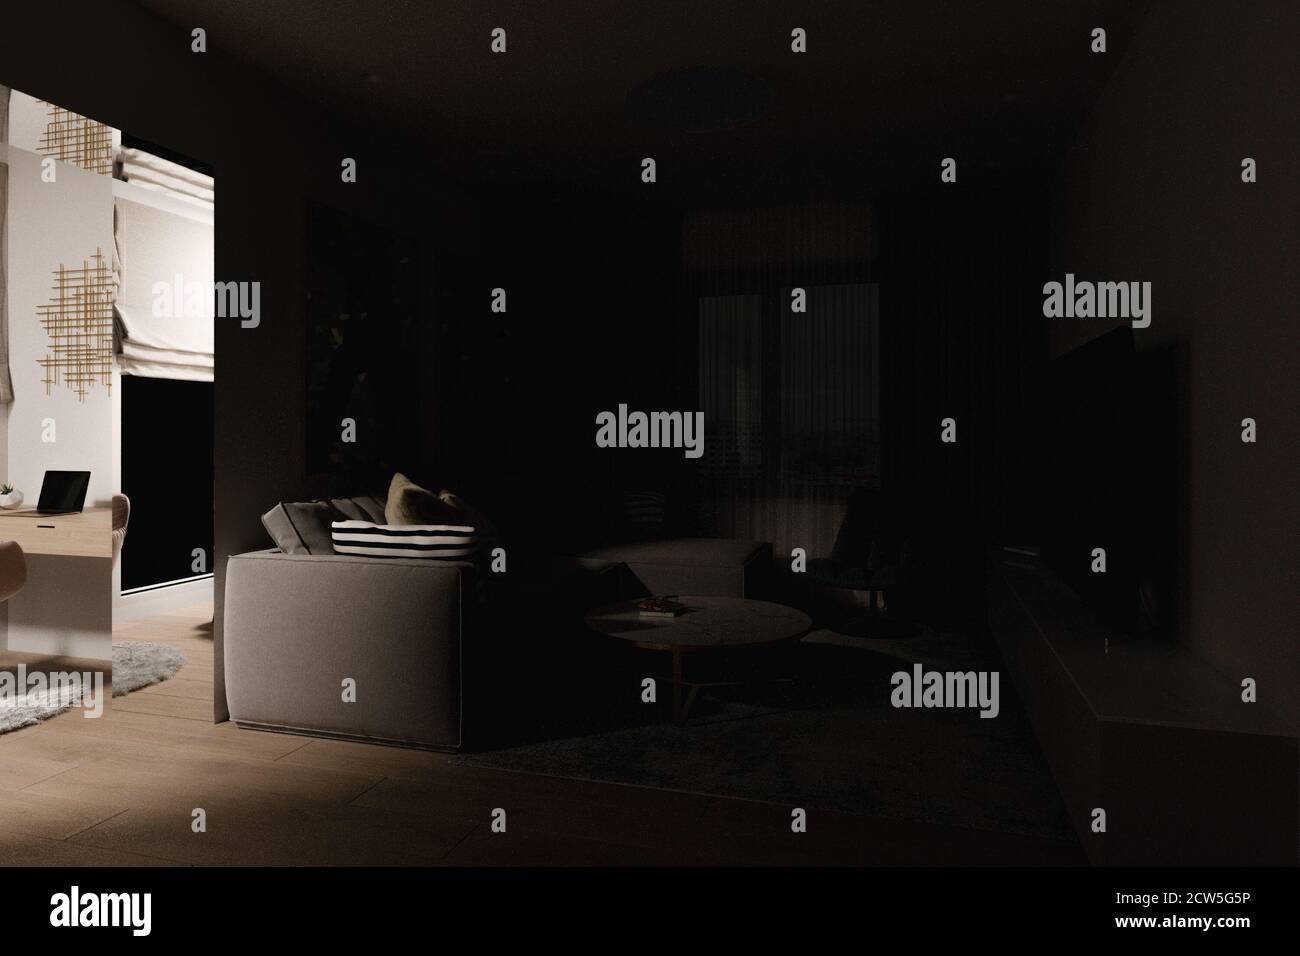 Una serie di illustrazioni 3d del soggiorno interno con illuminazione diversa Foto Stock